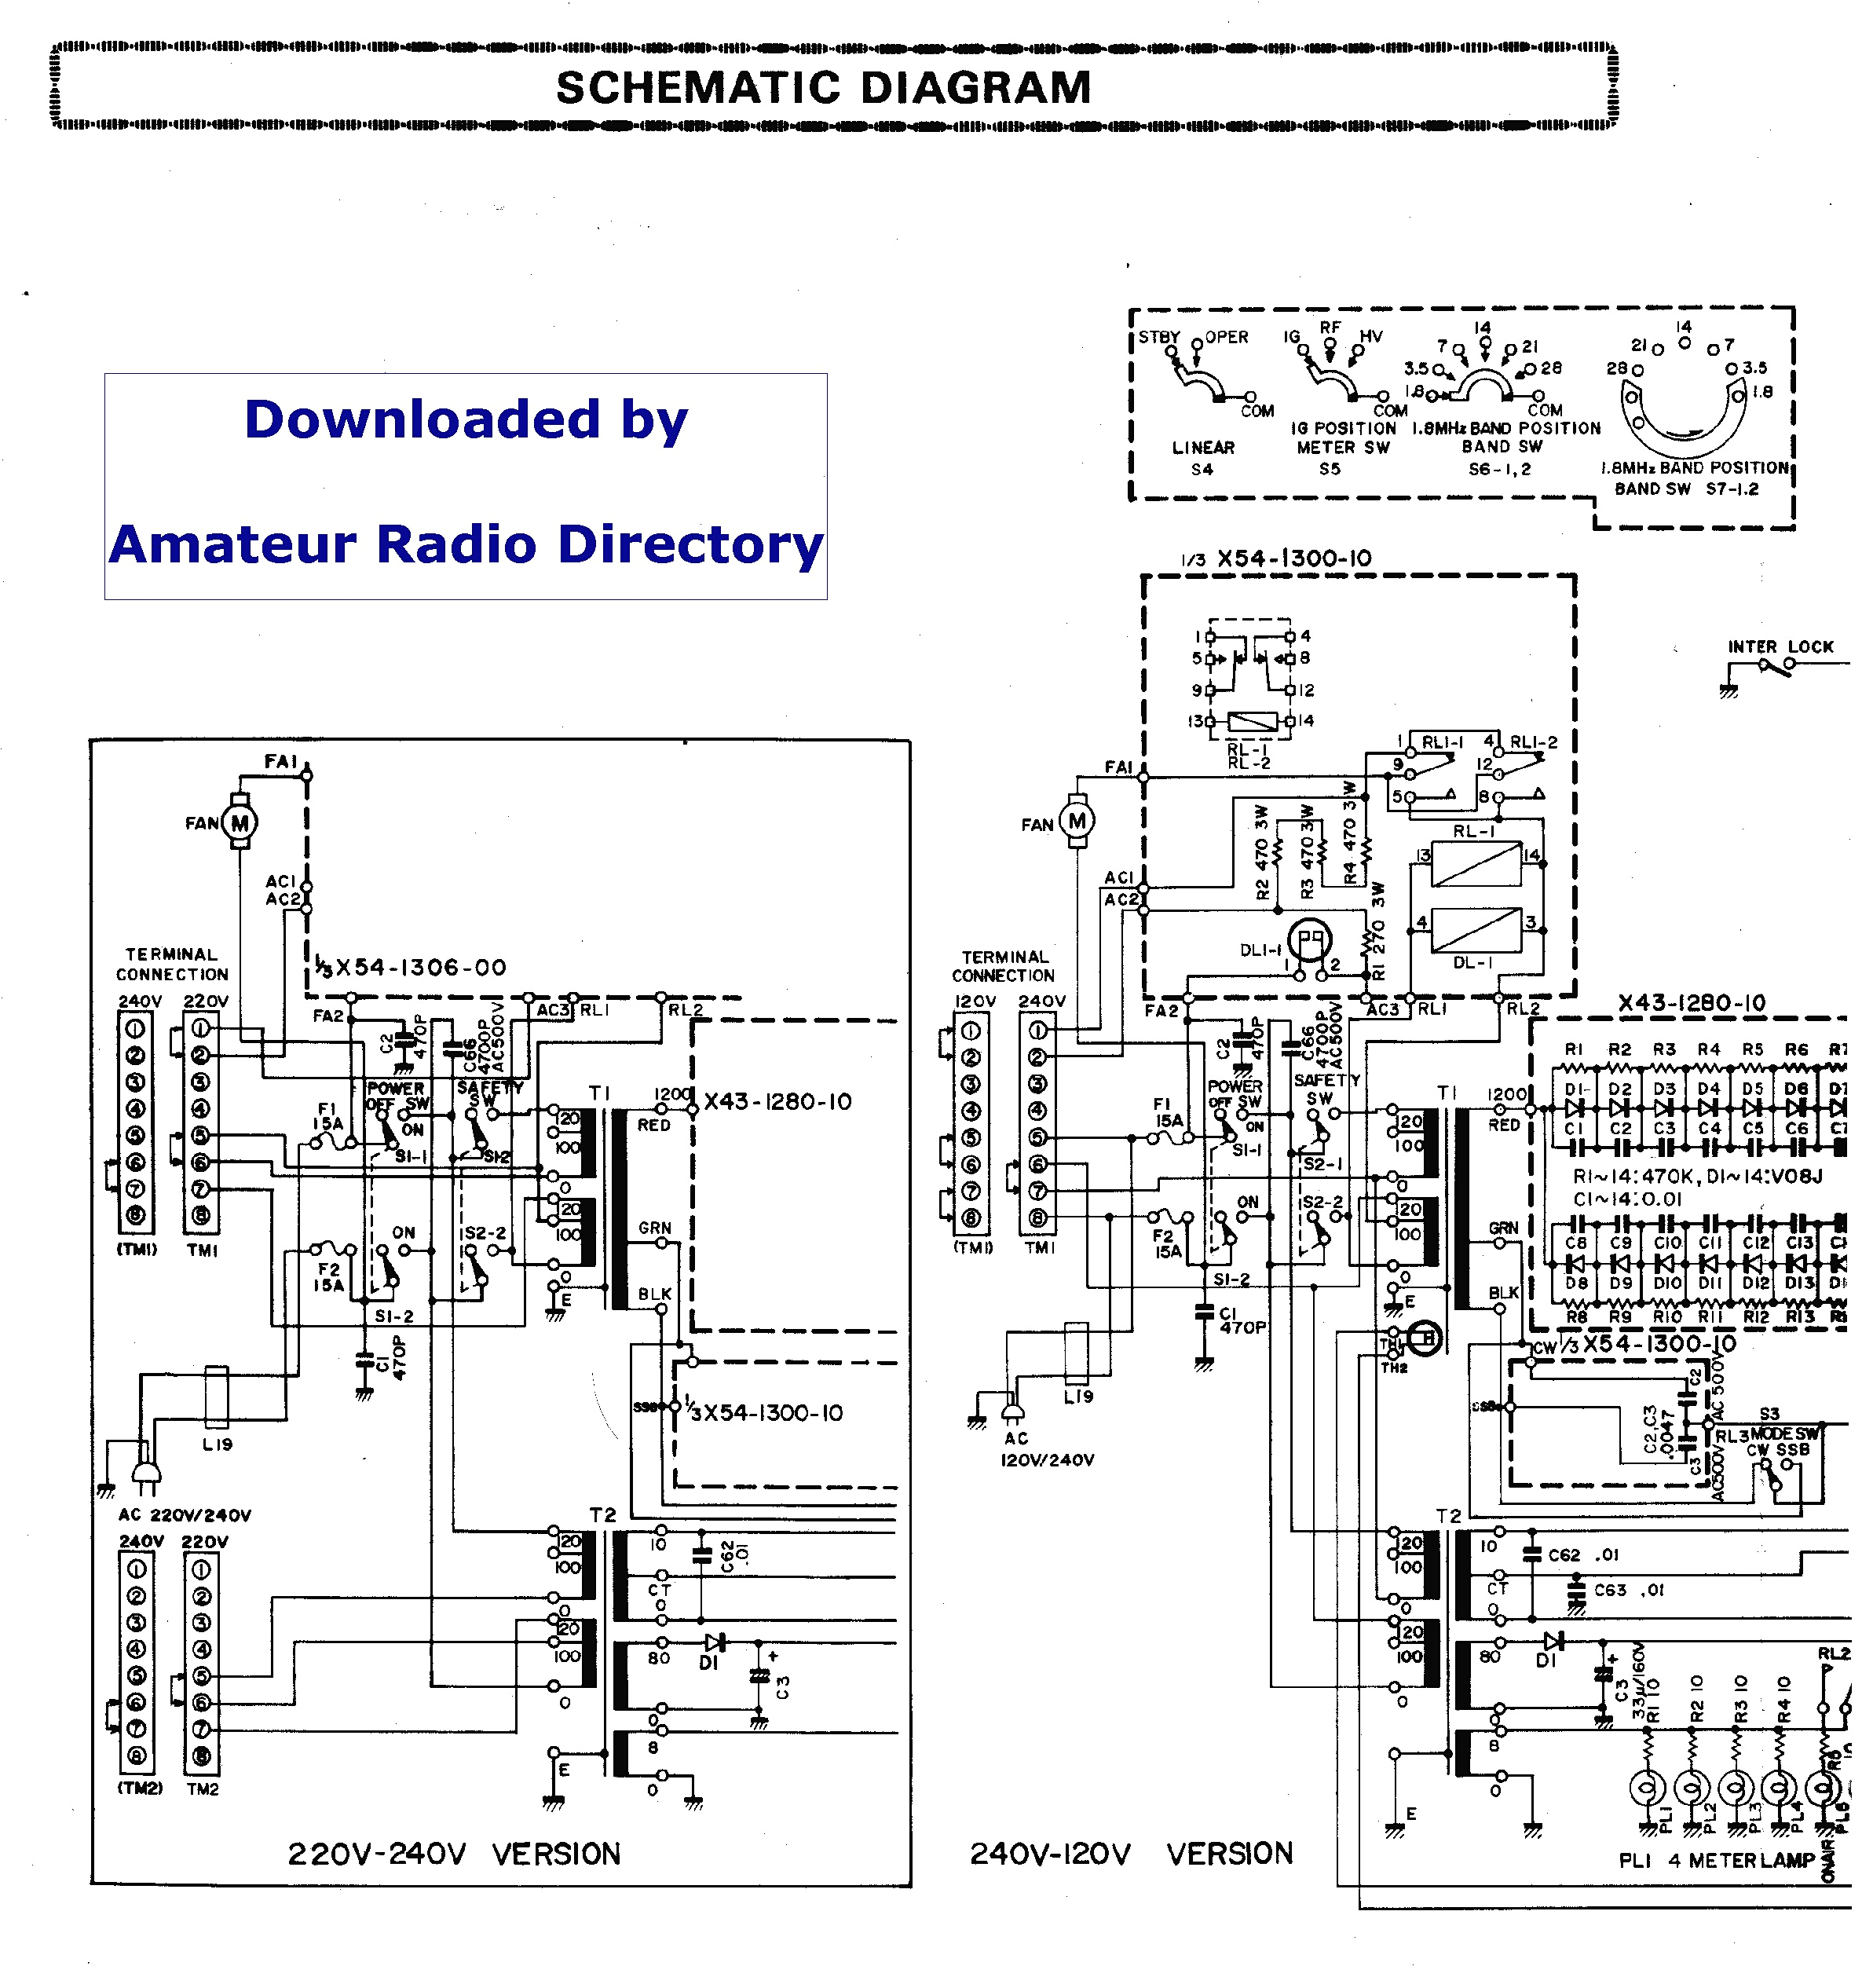 Ctr Oltc Wiring Diagram Ctr Oltc Wiring Diagram 47 Elegant Kenwood Dnx6960 Wiring Diagram